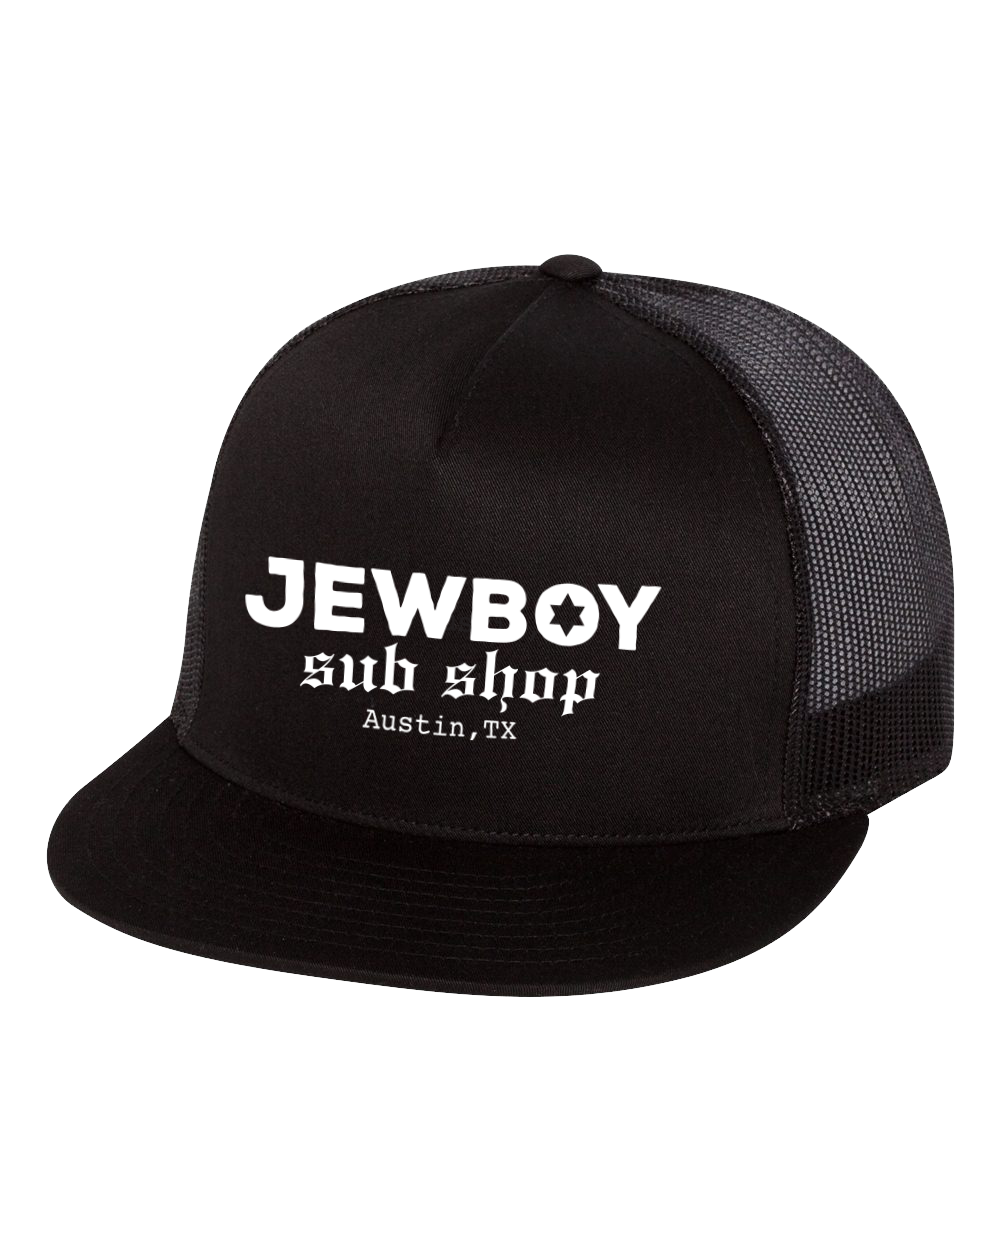 JewBoy Sub Shop Trucker